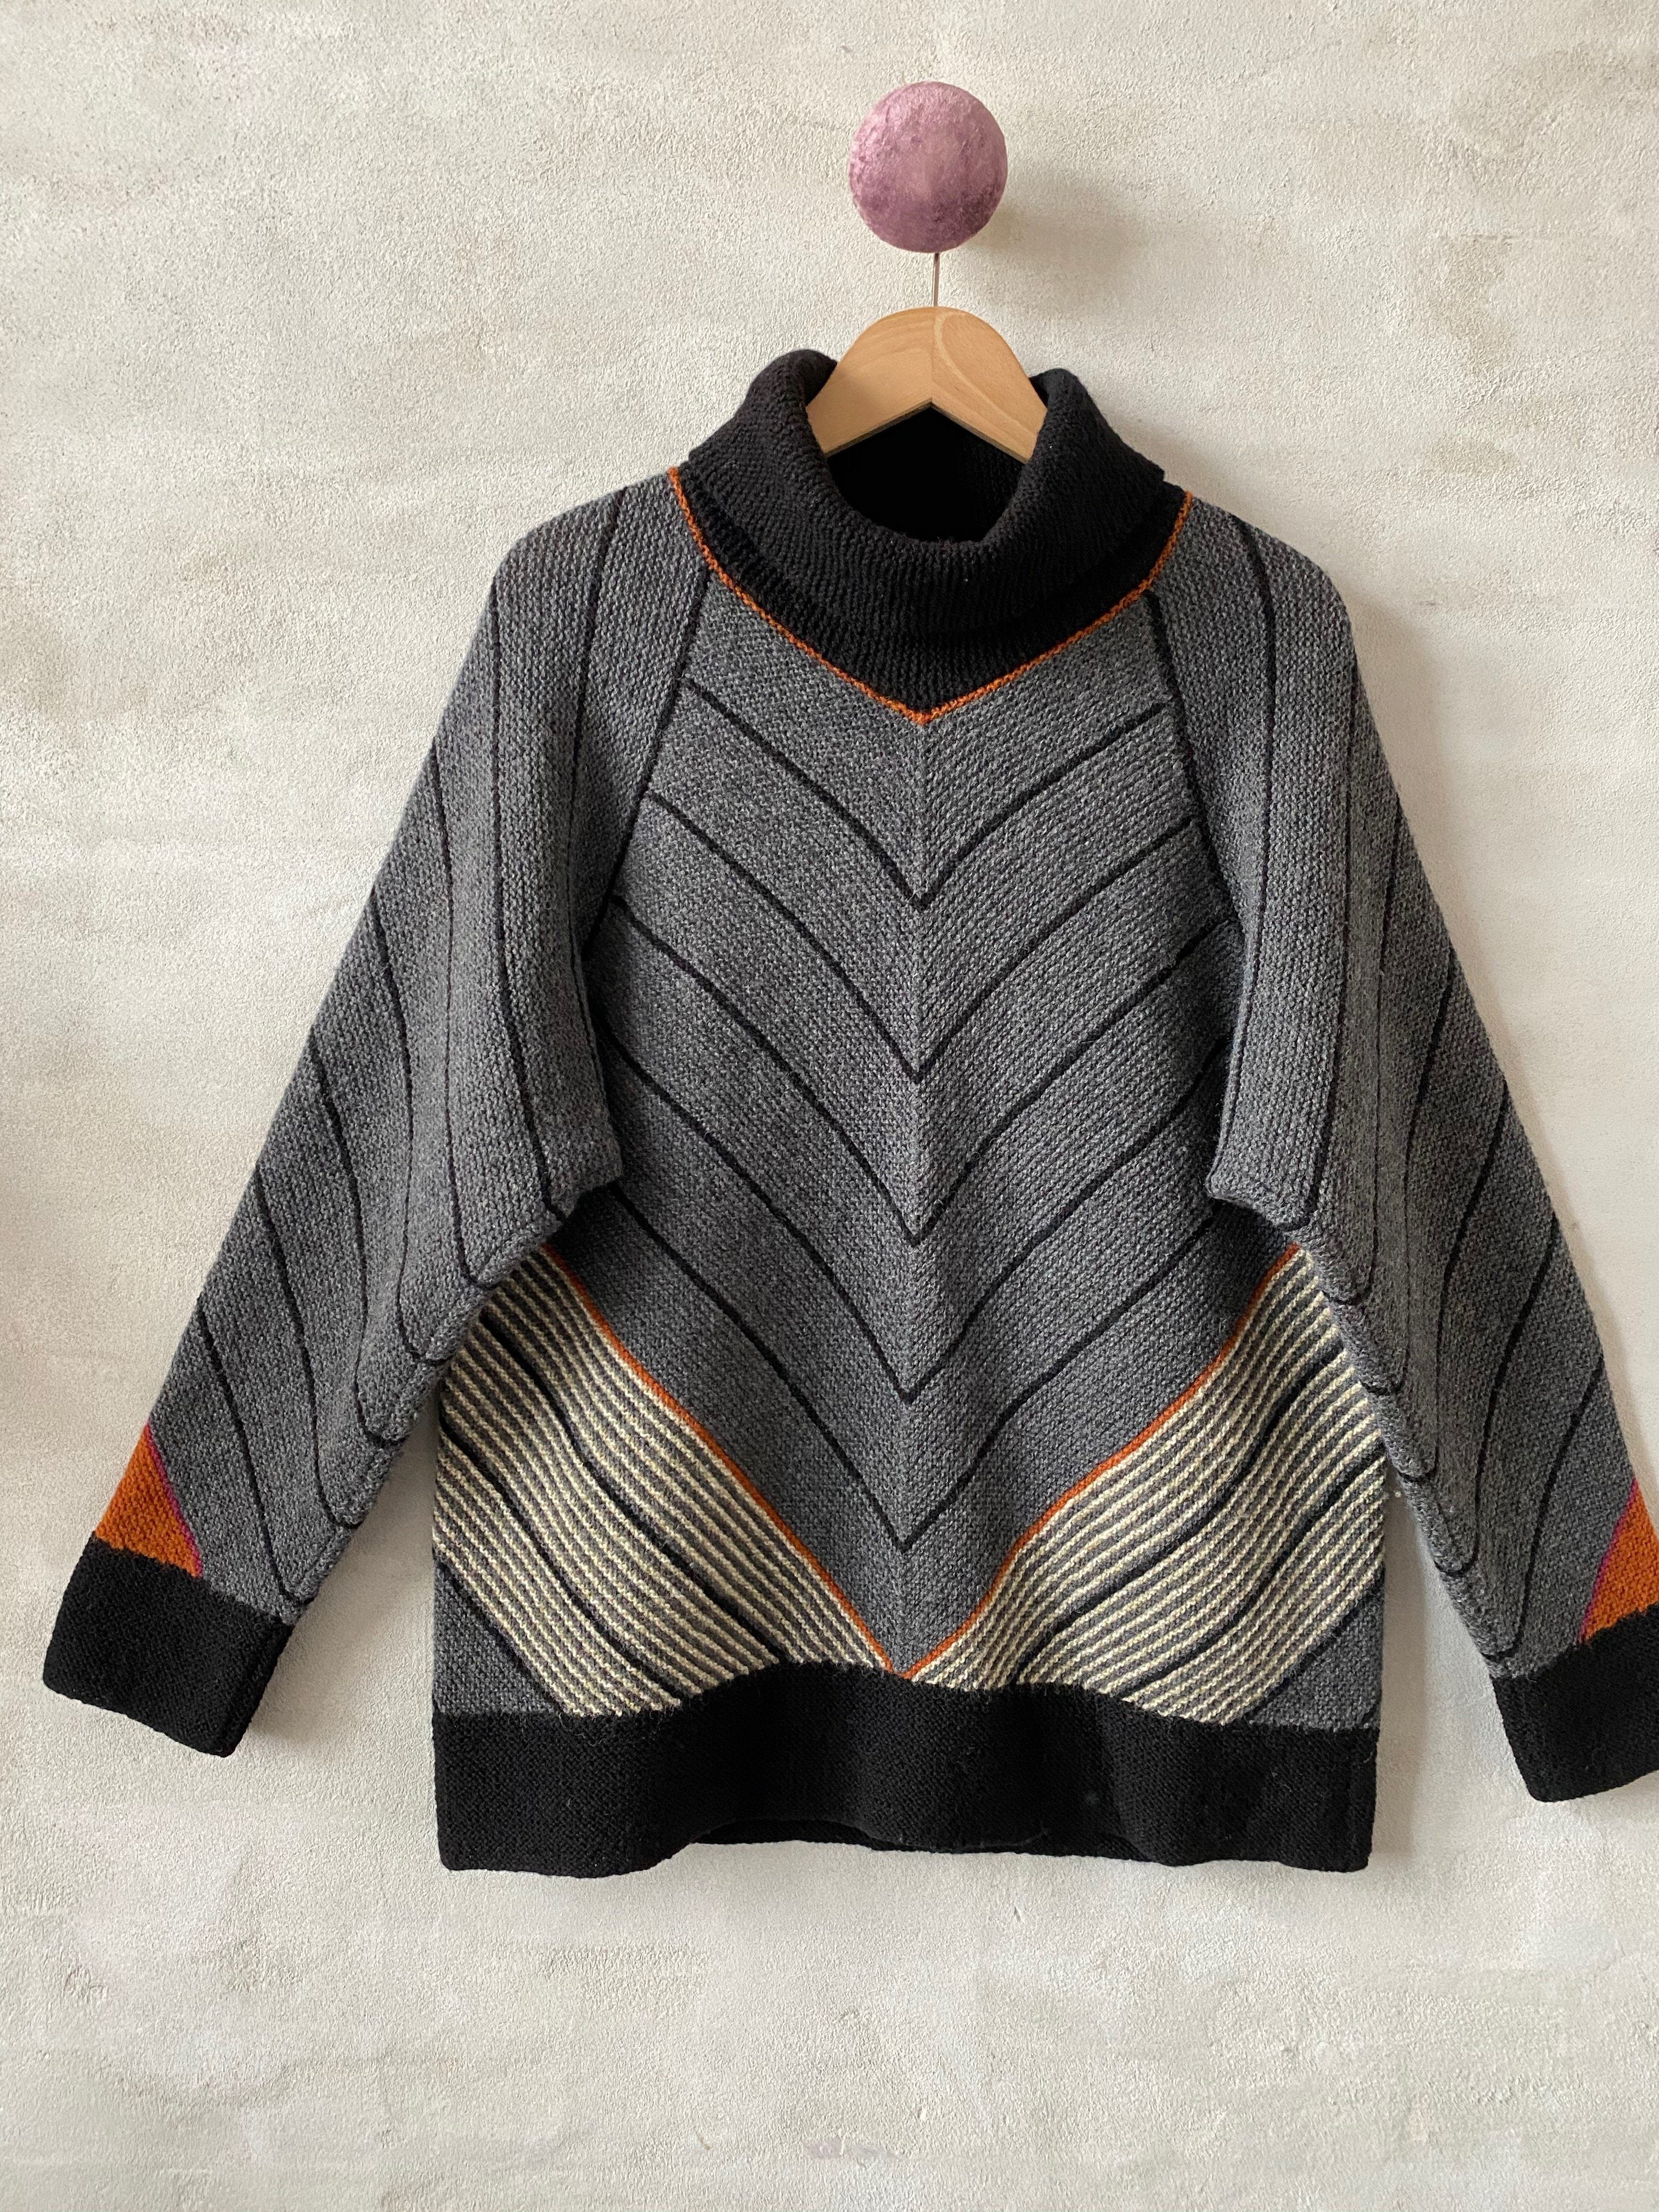 Profil sweater af Hanne Falkenberg, No 20 strikkekit